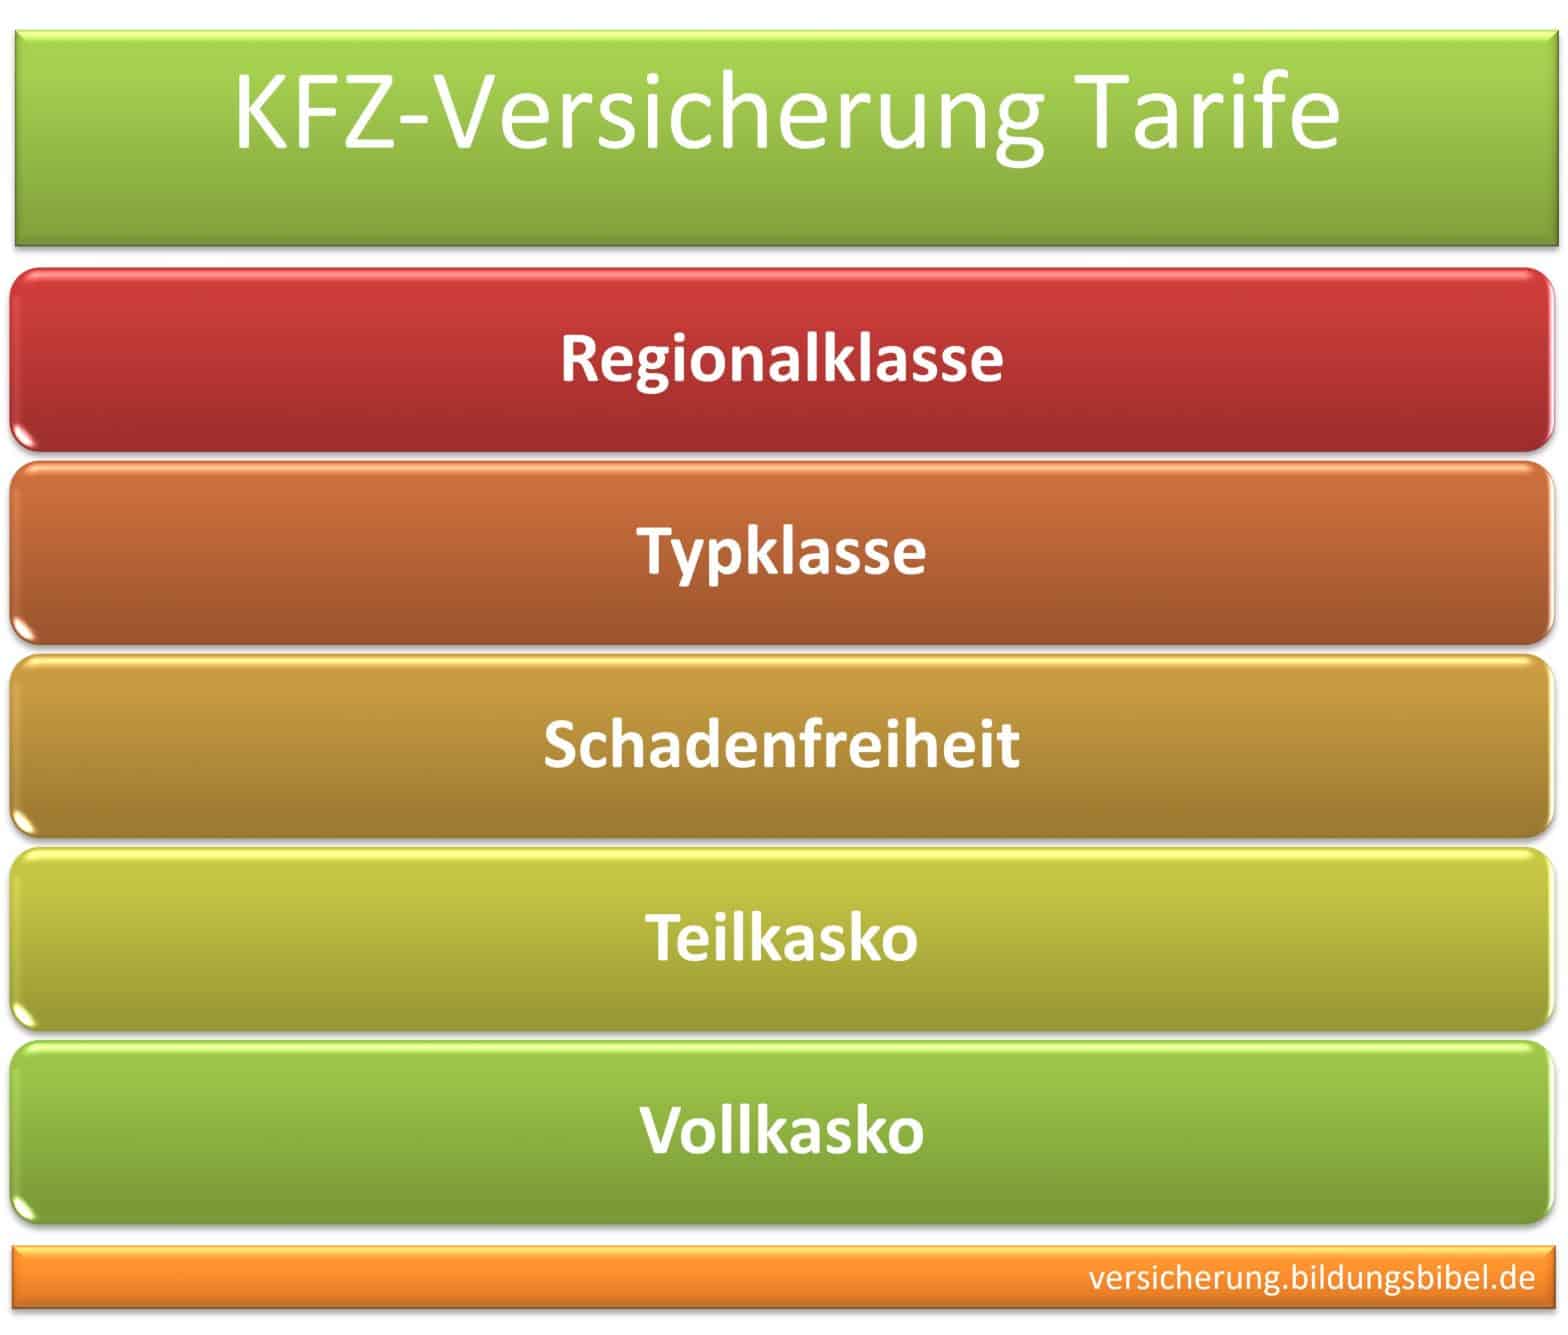 Kfz-Versicherung Tarife und Klassen im Überblick, Info zu Regionalklasse, Typklasse sowie Schadenfreiheitklassen SFK, Teilkasko und Vollkasko sowie Selbstbehalte.